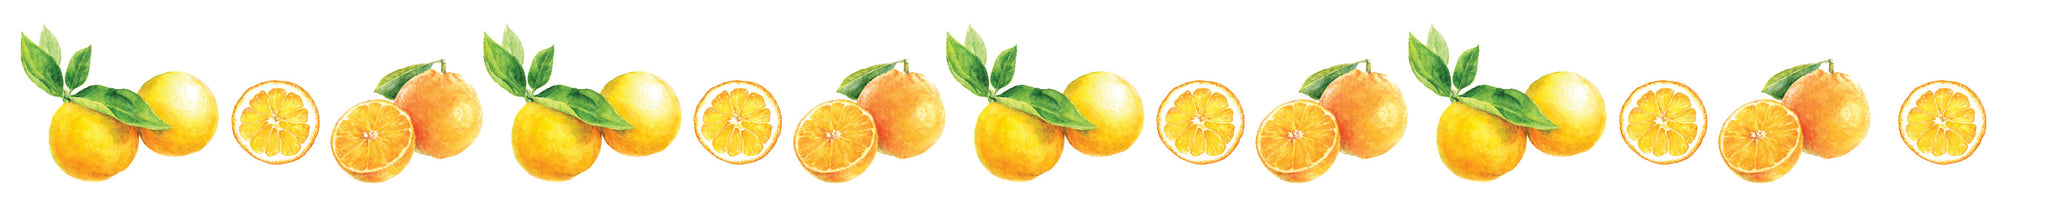 line of oranges